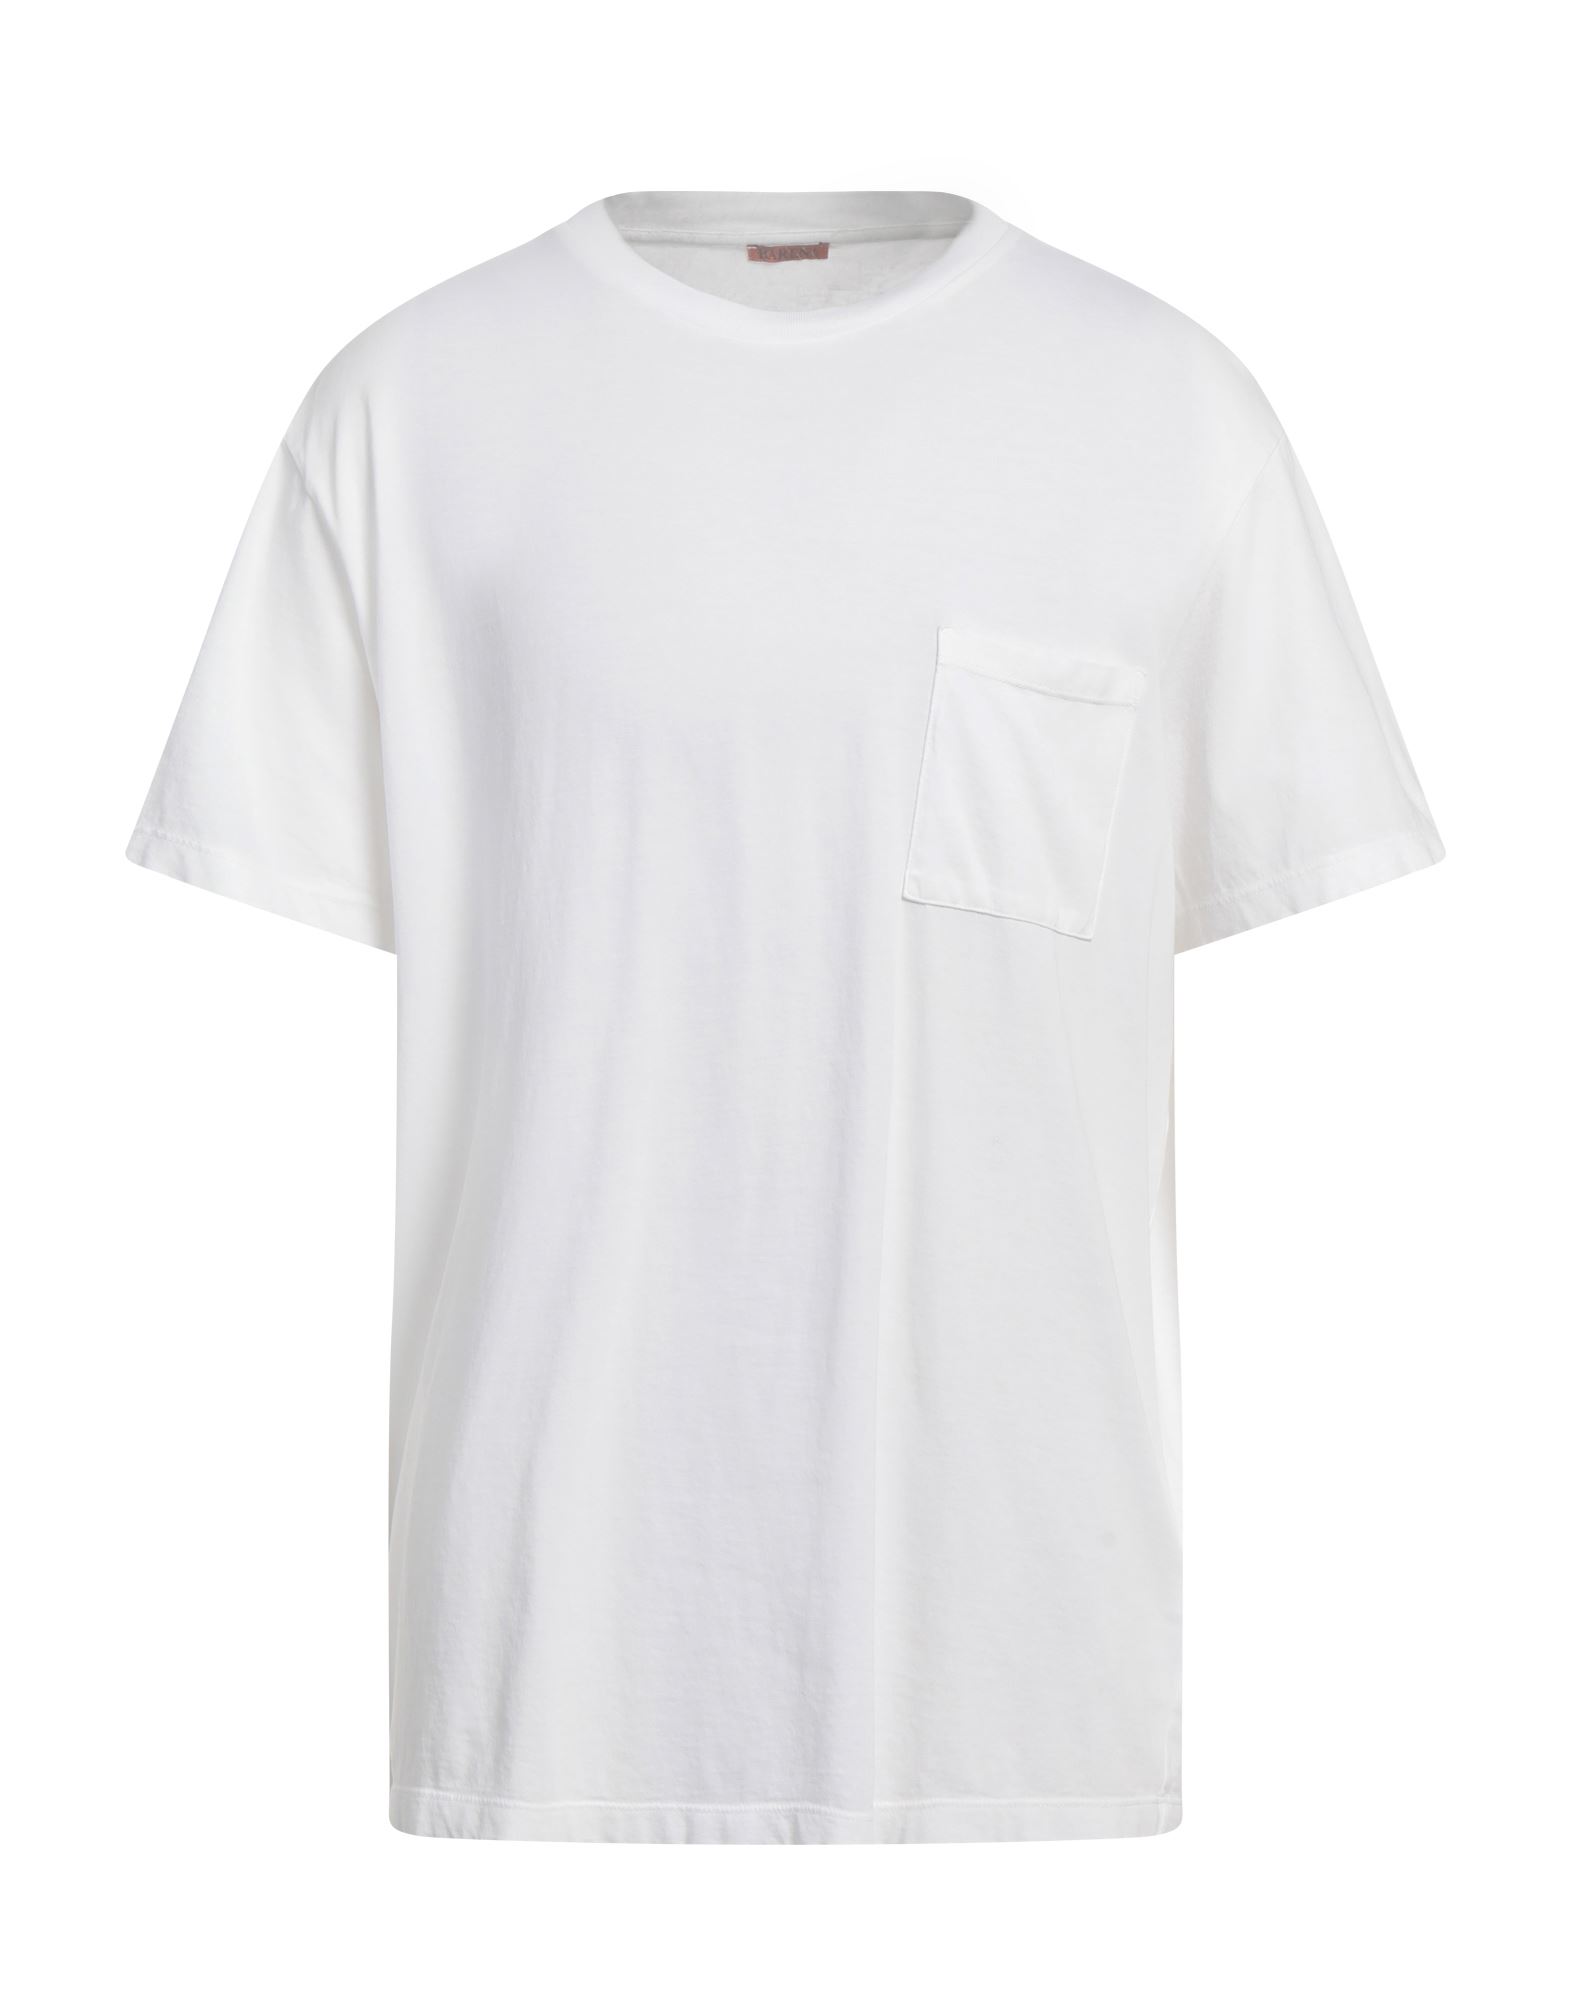 Barena Venezia Barena T-shirts In White